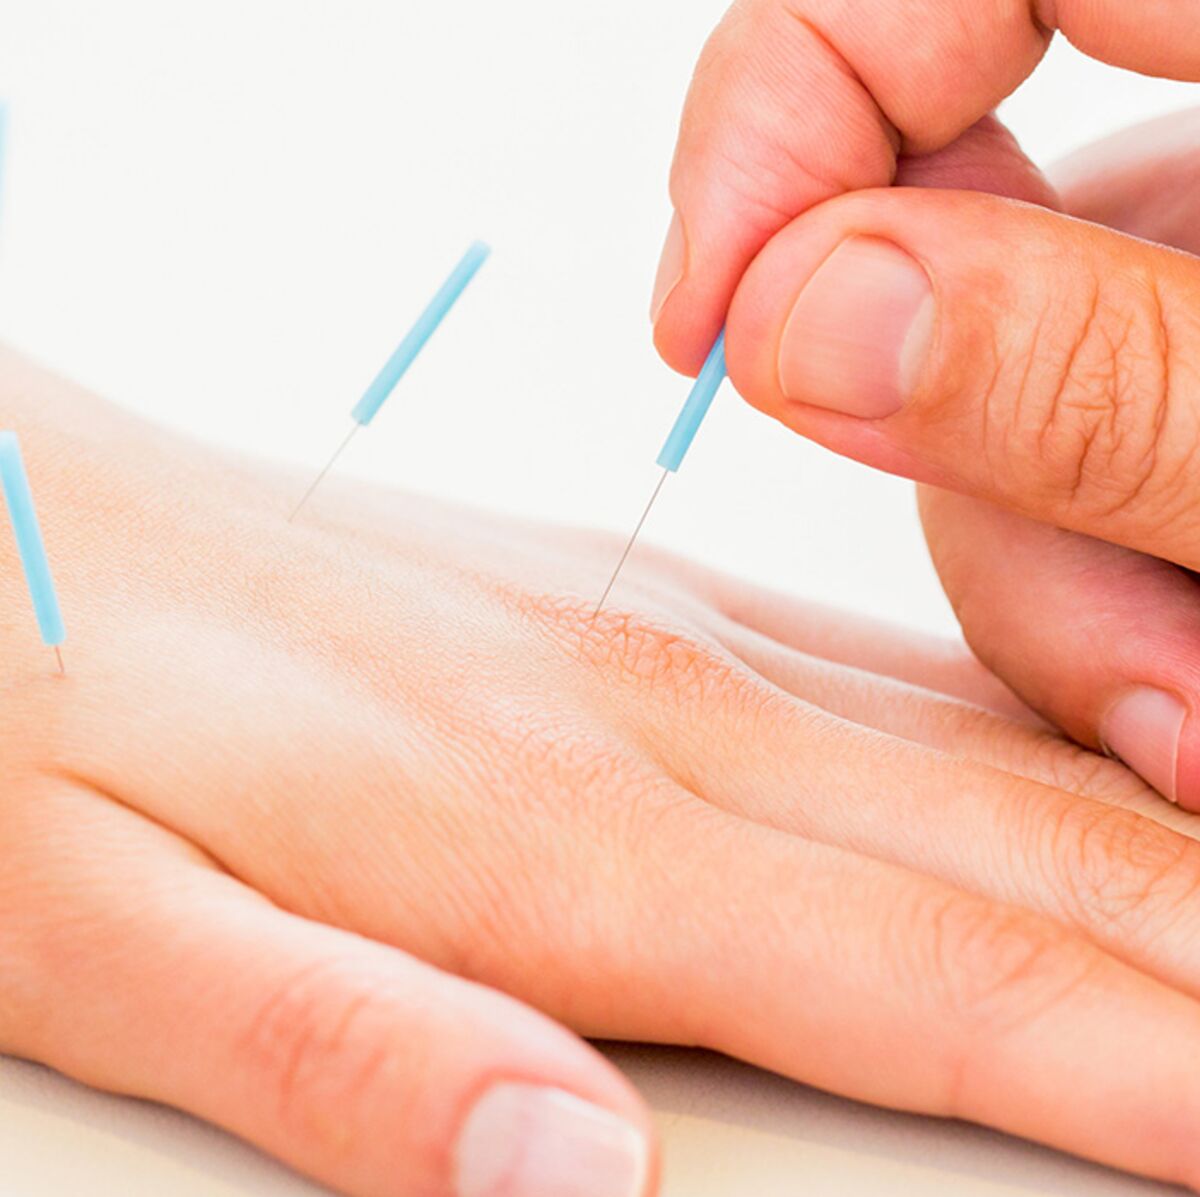 Canal carpien : de l'acupuncture pour soulager les douleurs ...